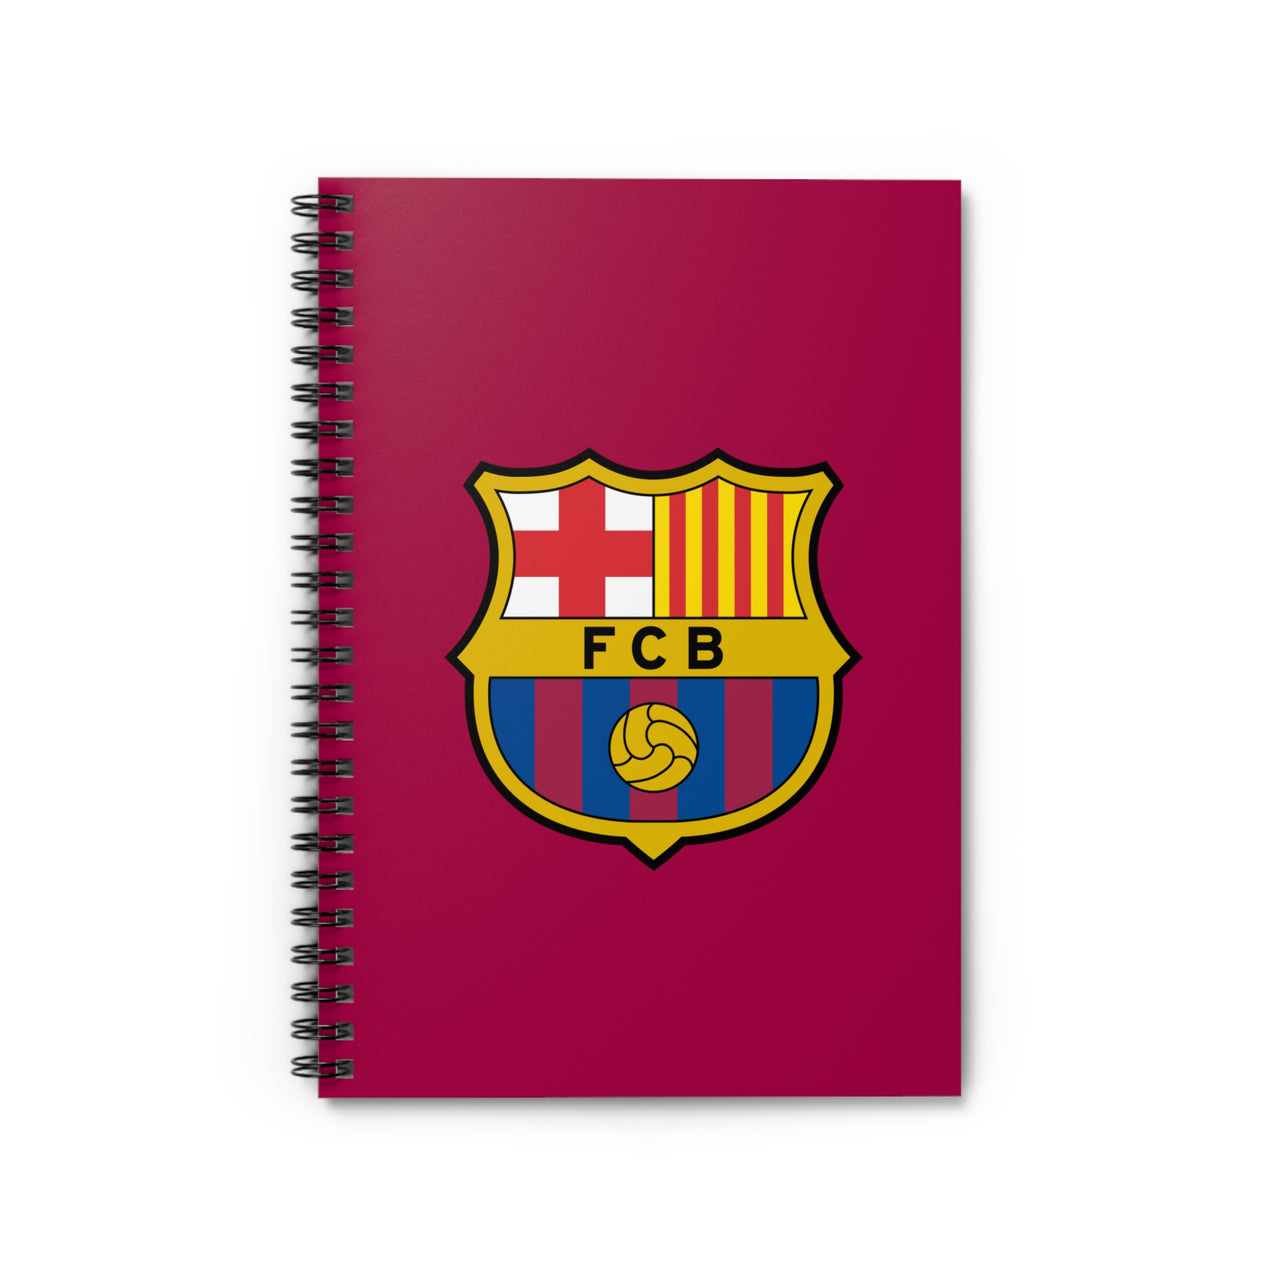 Barcelona Spiral Notebook - Ruled Line